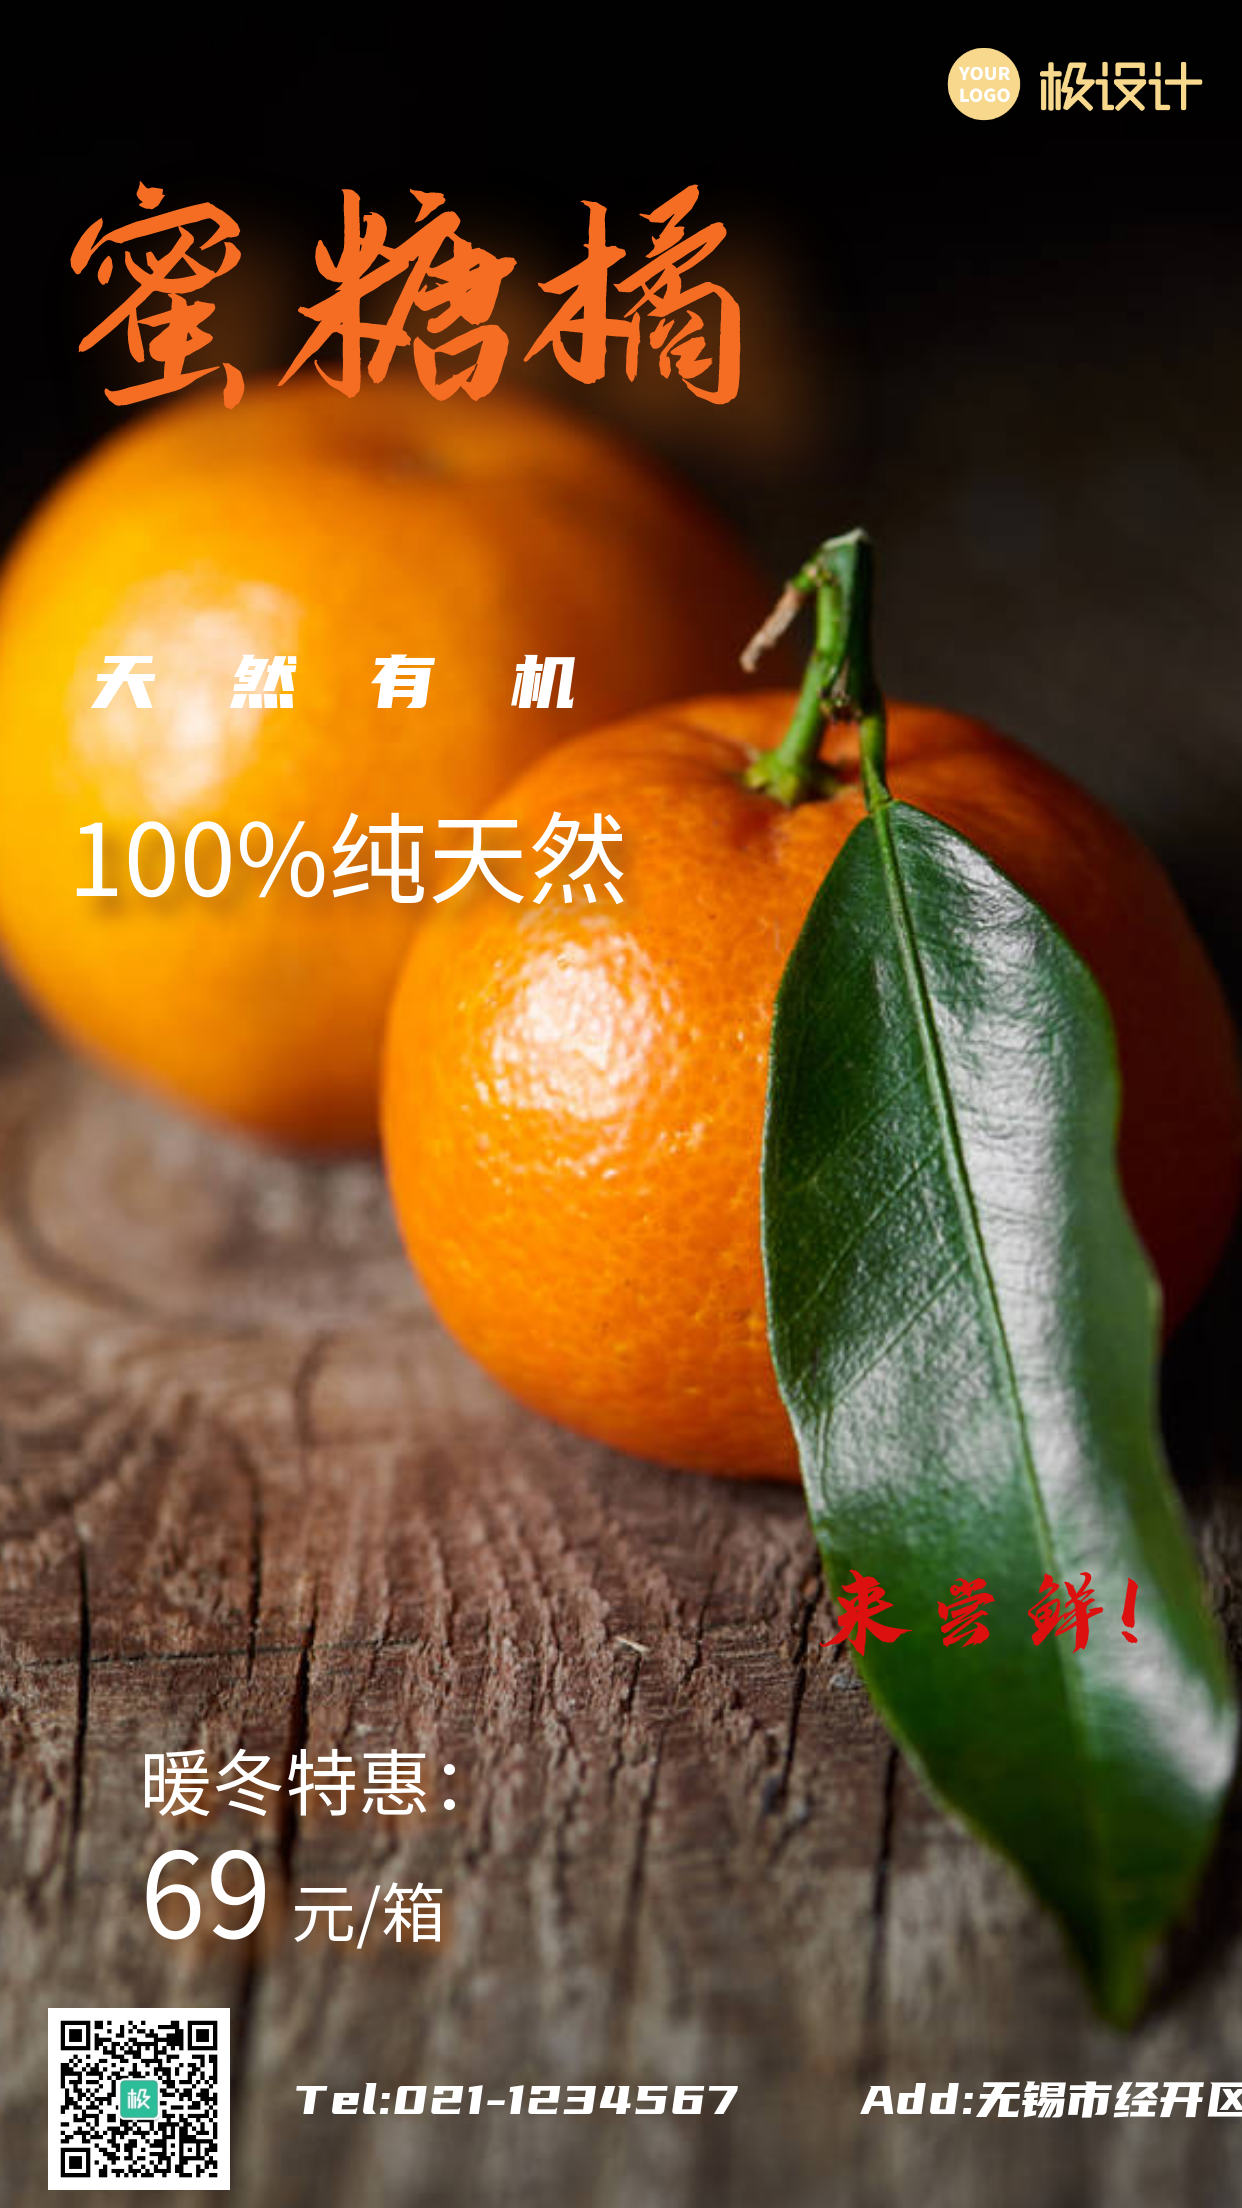 橘子优惠活动摄影图手机海报